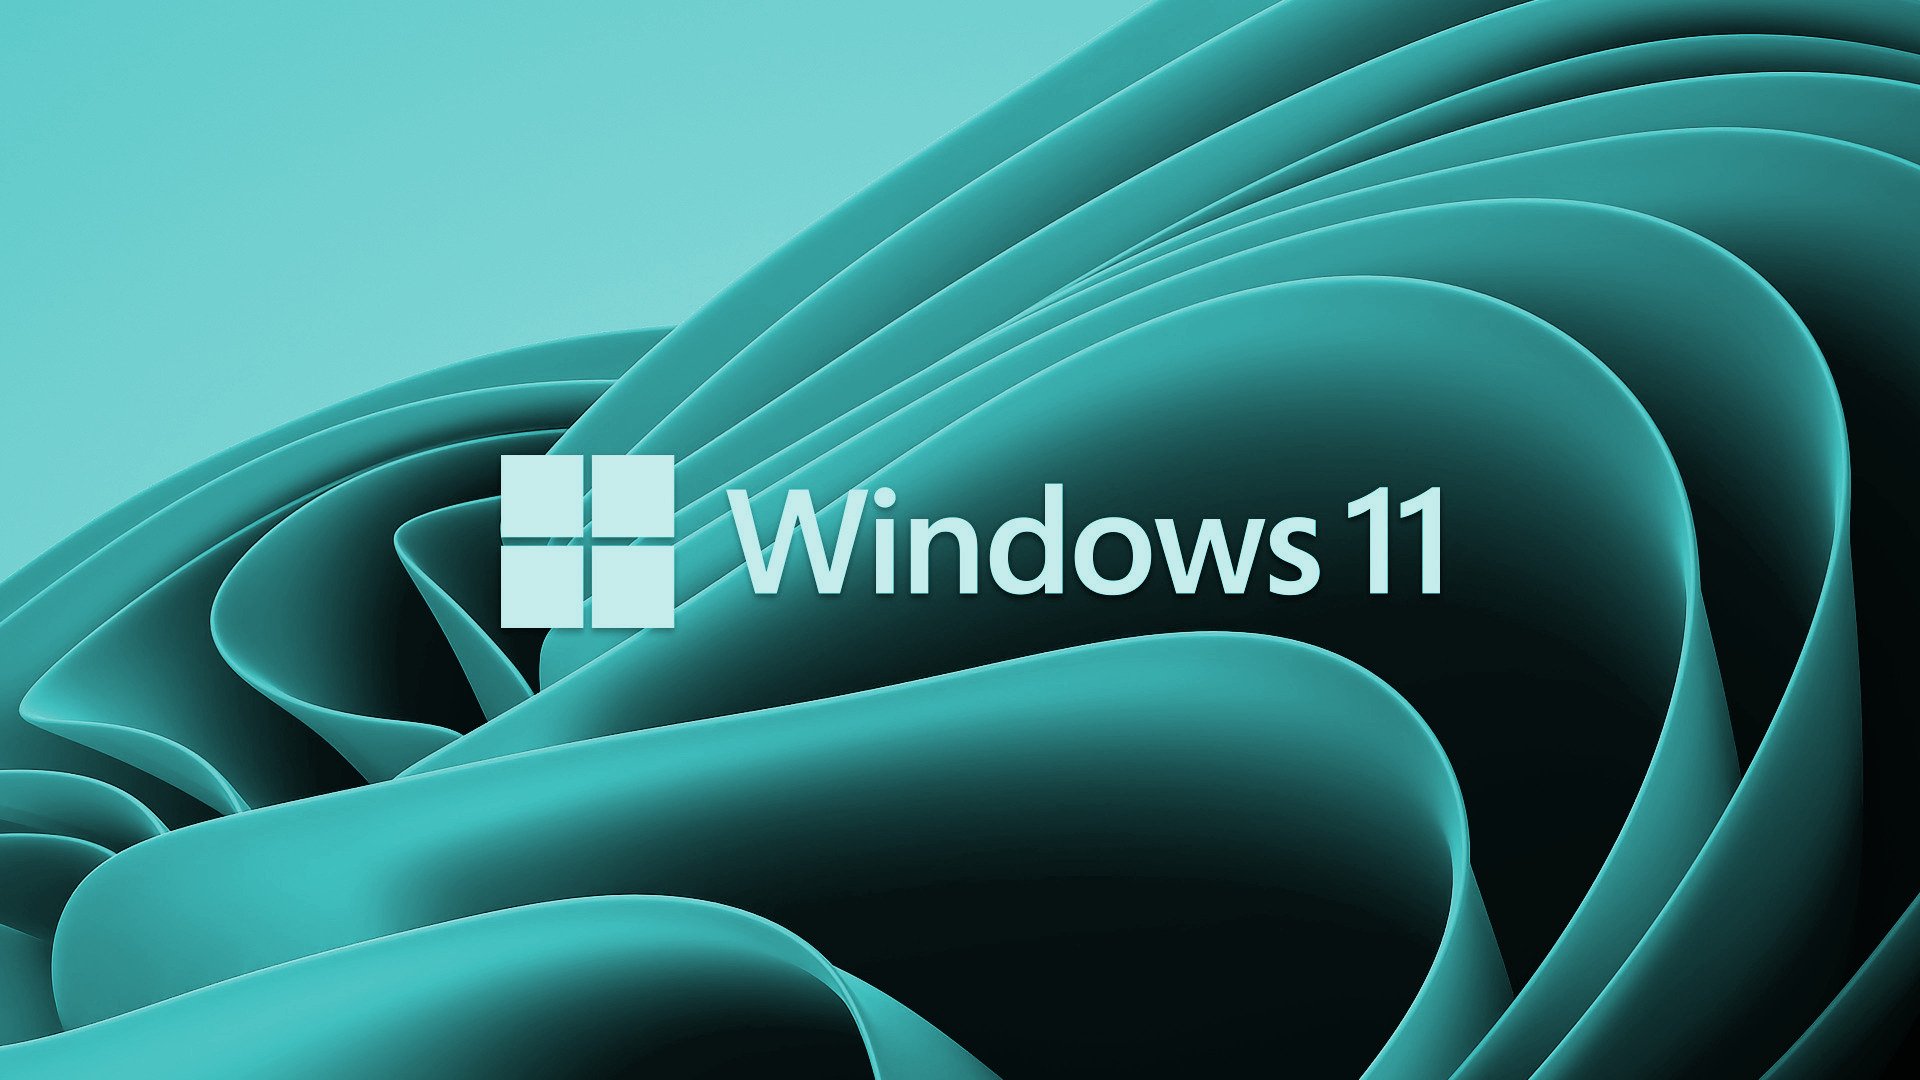 Hãy tự do sáng tạo và tùy chỉnh với bức tranh Windows 11 đẹp mắt này. Với những tông màu sáng tạo và chất liệu đa dạng, bạn sẽ có thể đưa máy tính đến một tầm cao mới.